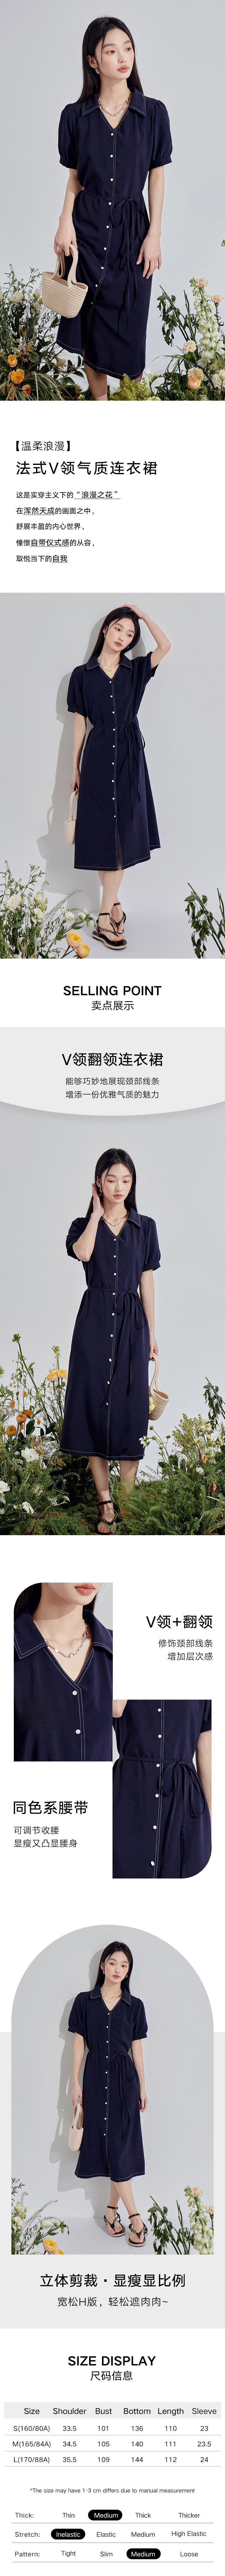 【中国直邮】HSPM 新款法式V领气质连衣裙 深蓝色 S